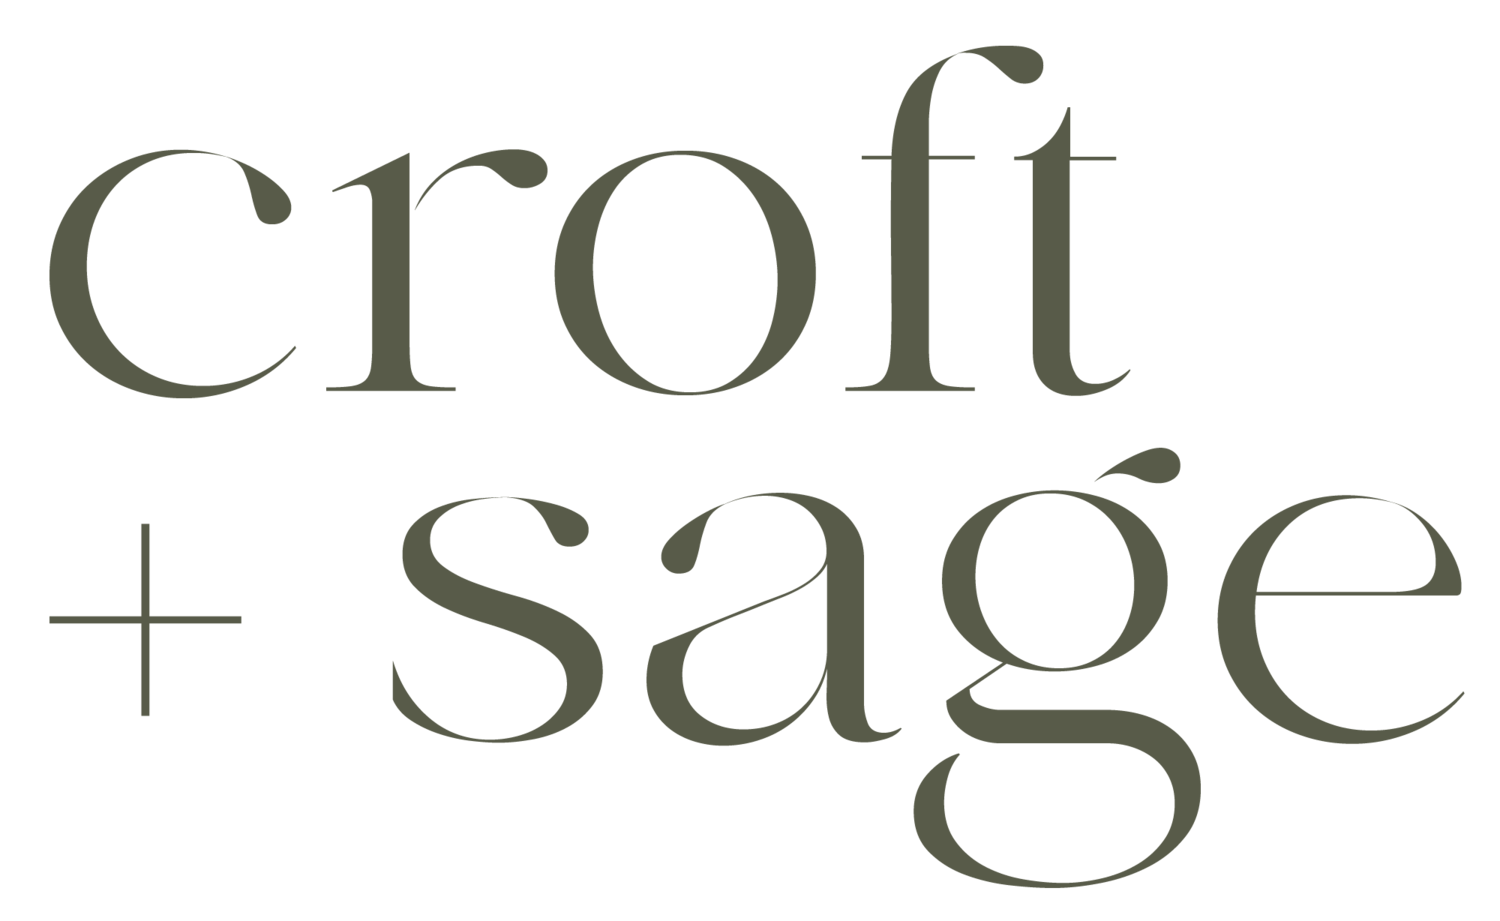 Croft + Sage